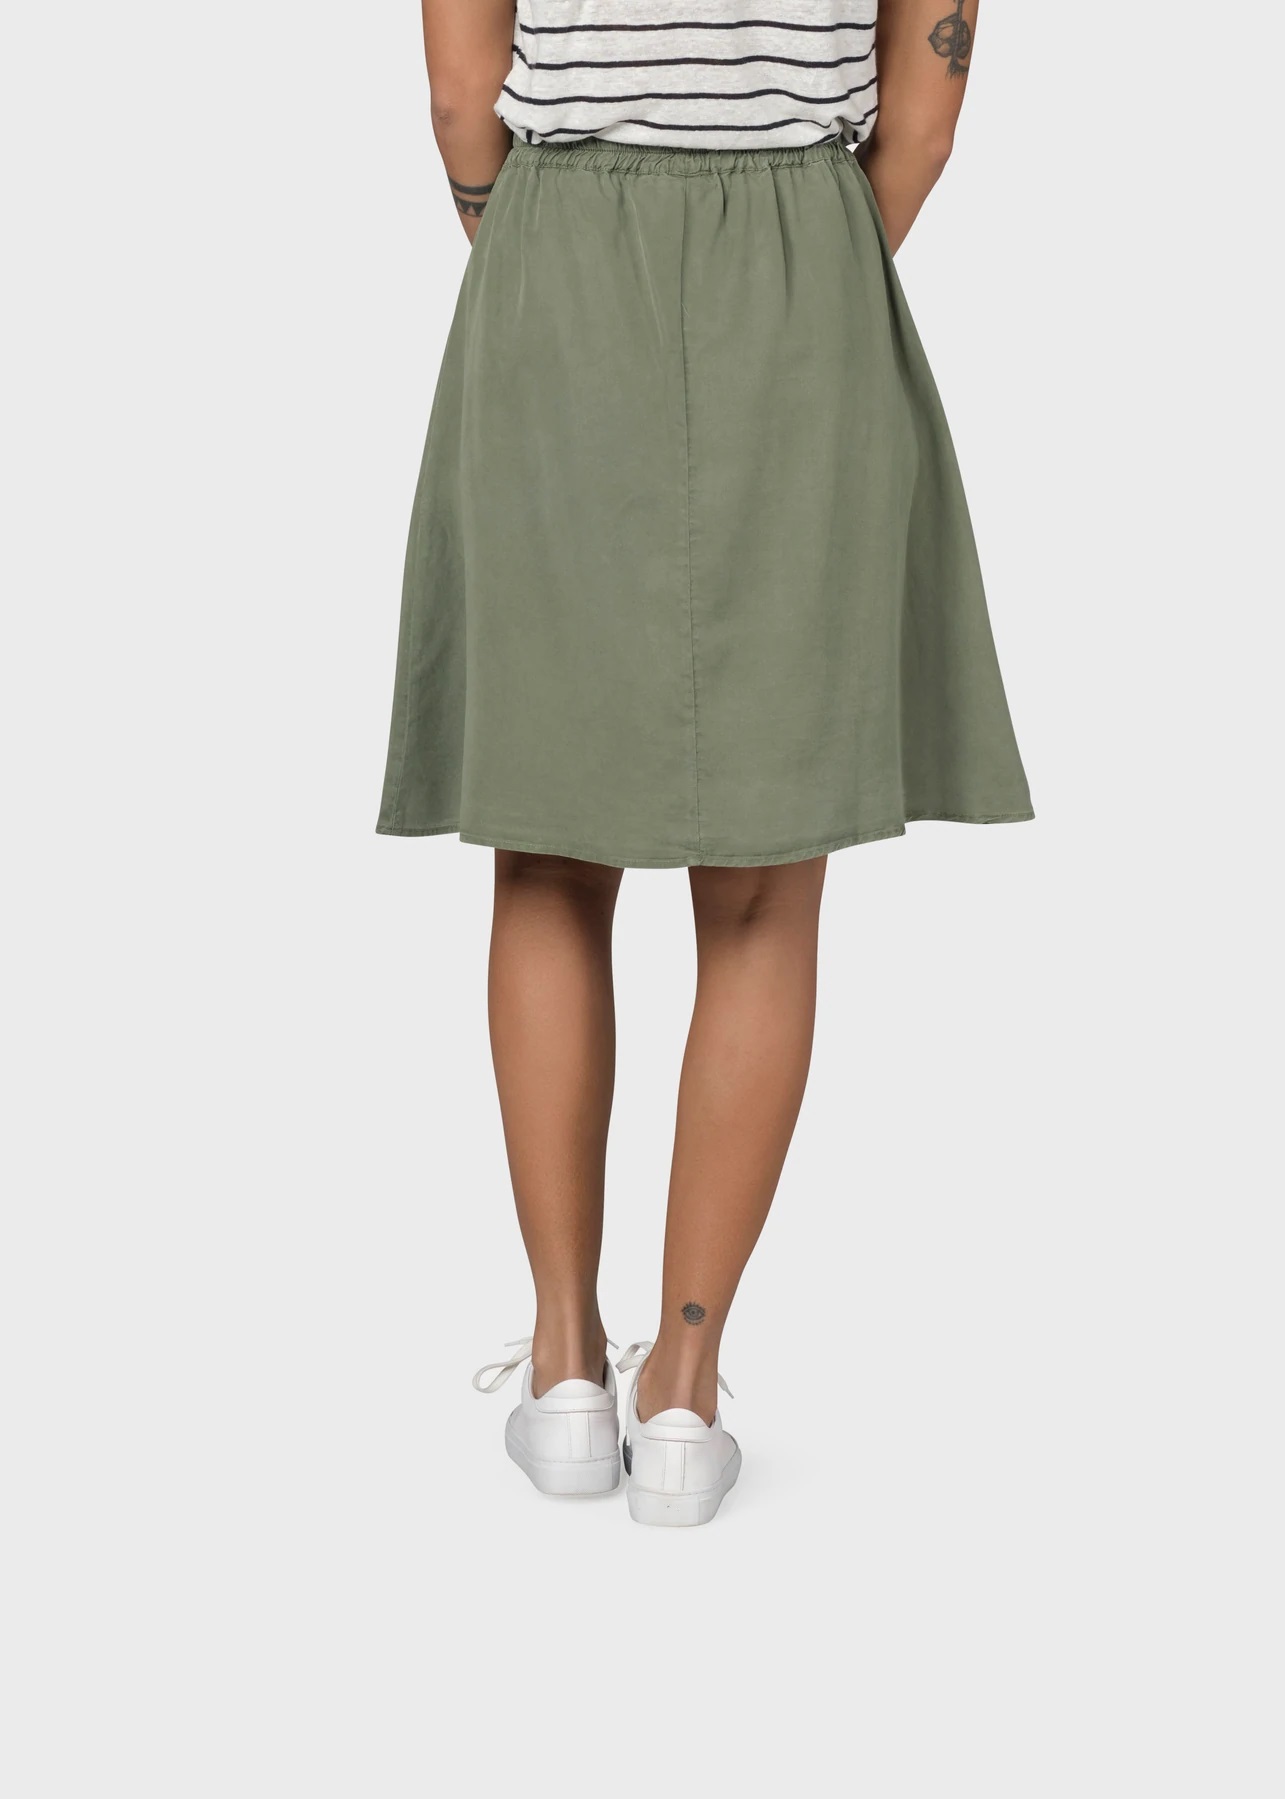 Knielanger Rock Ramona short skirt Pale green